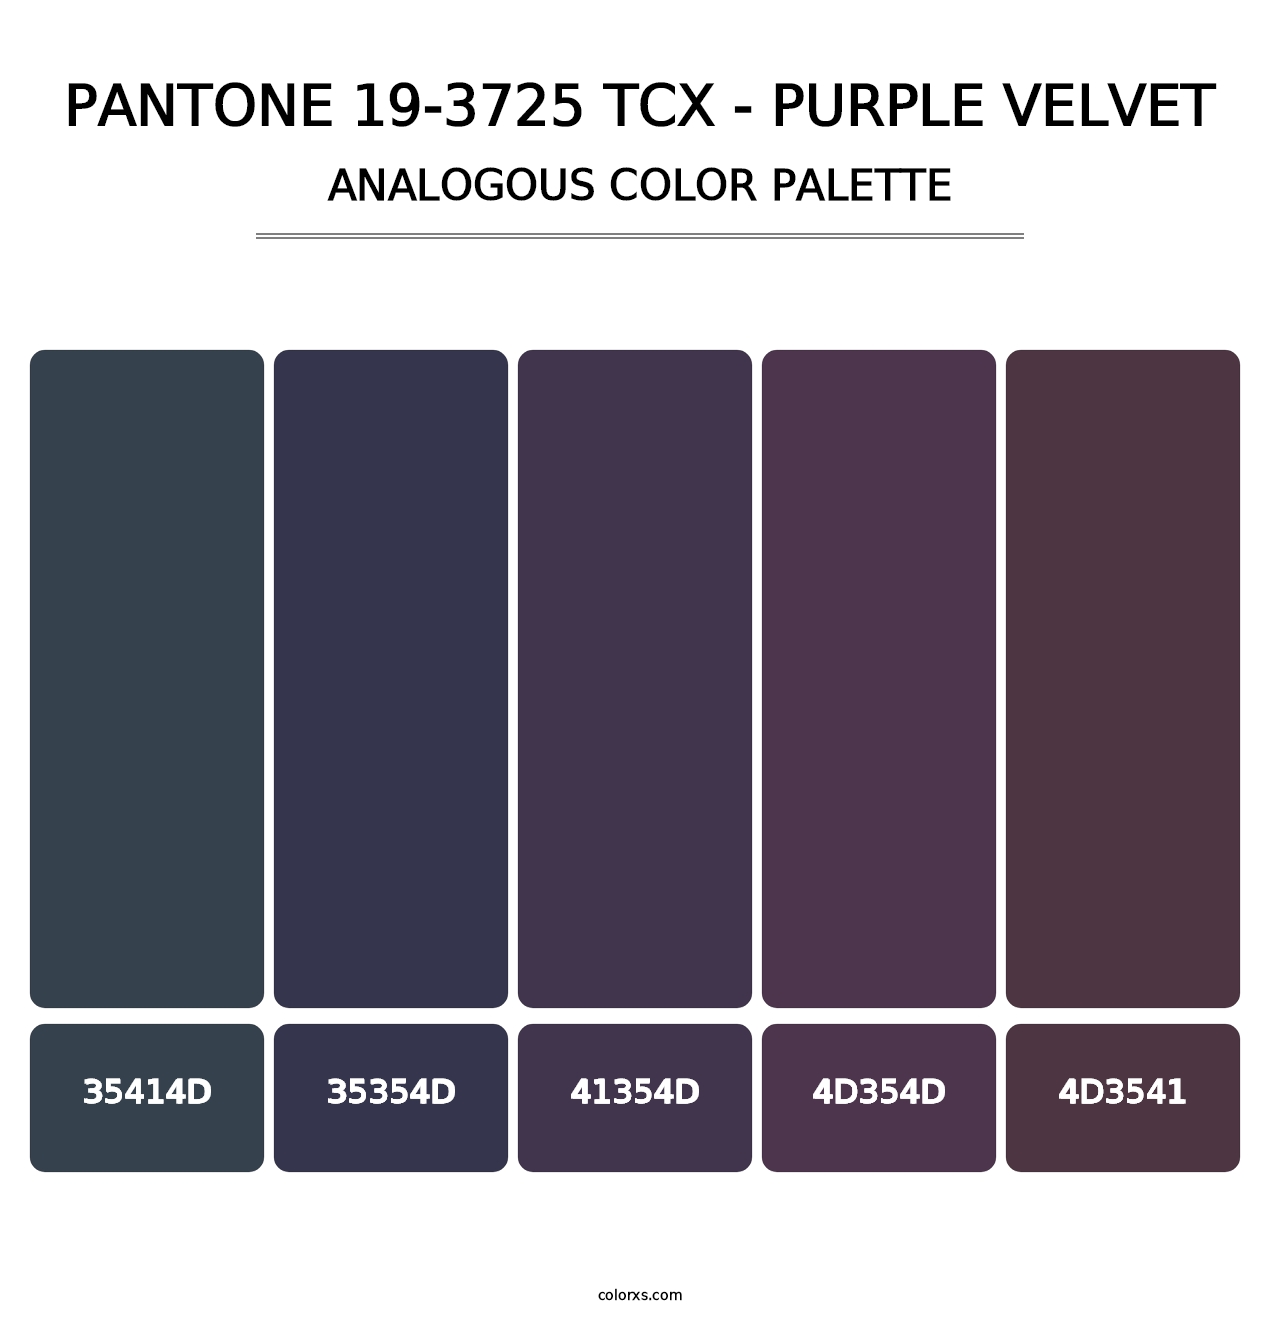 PANTONE 19-3725 TCX - Purple Velvet - Analogous Color Palette